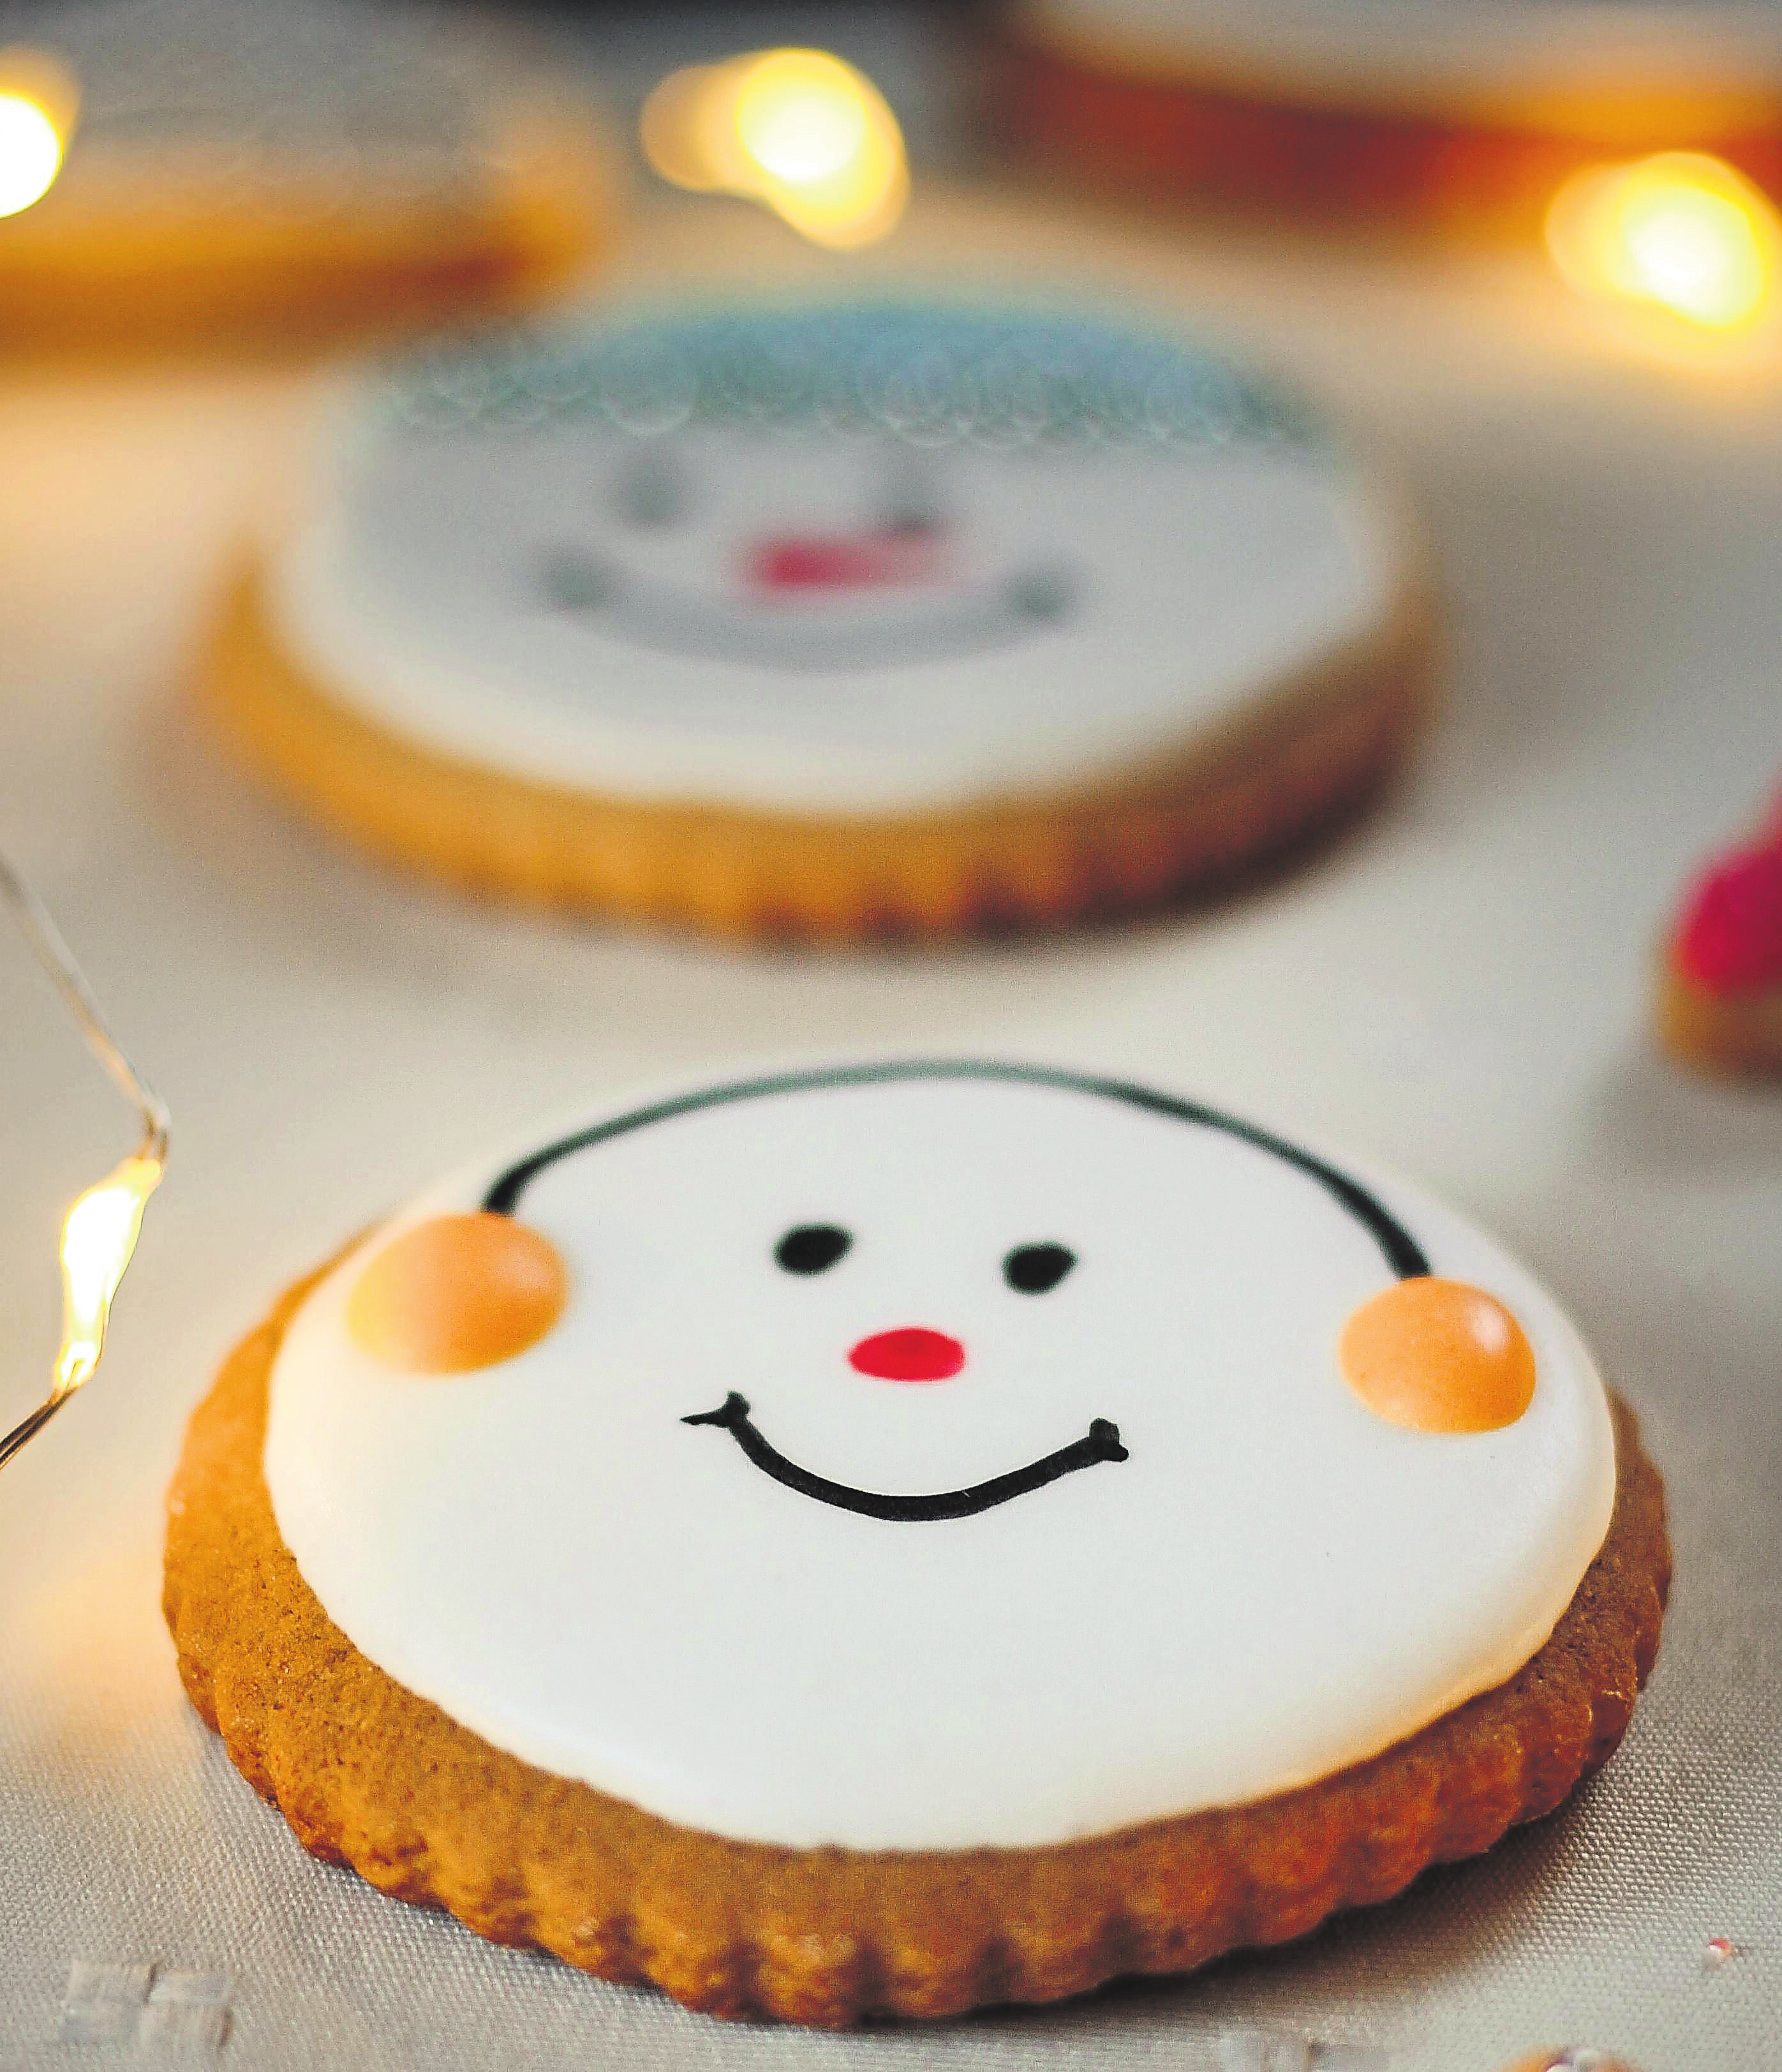 Noël est souvent l'occasion idéale pour donner livre cours à son imagination dans la confection des biscuits de toutes sortes.